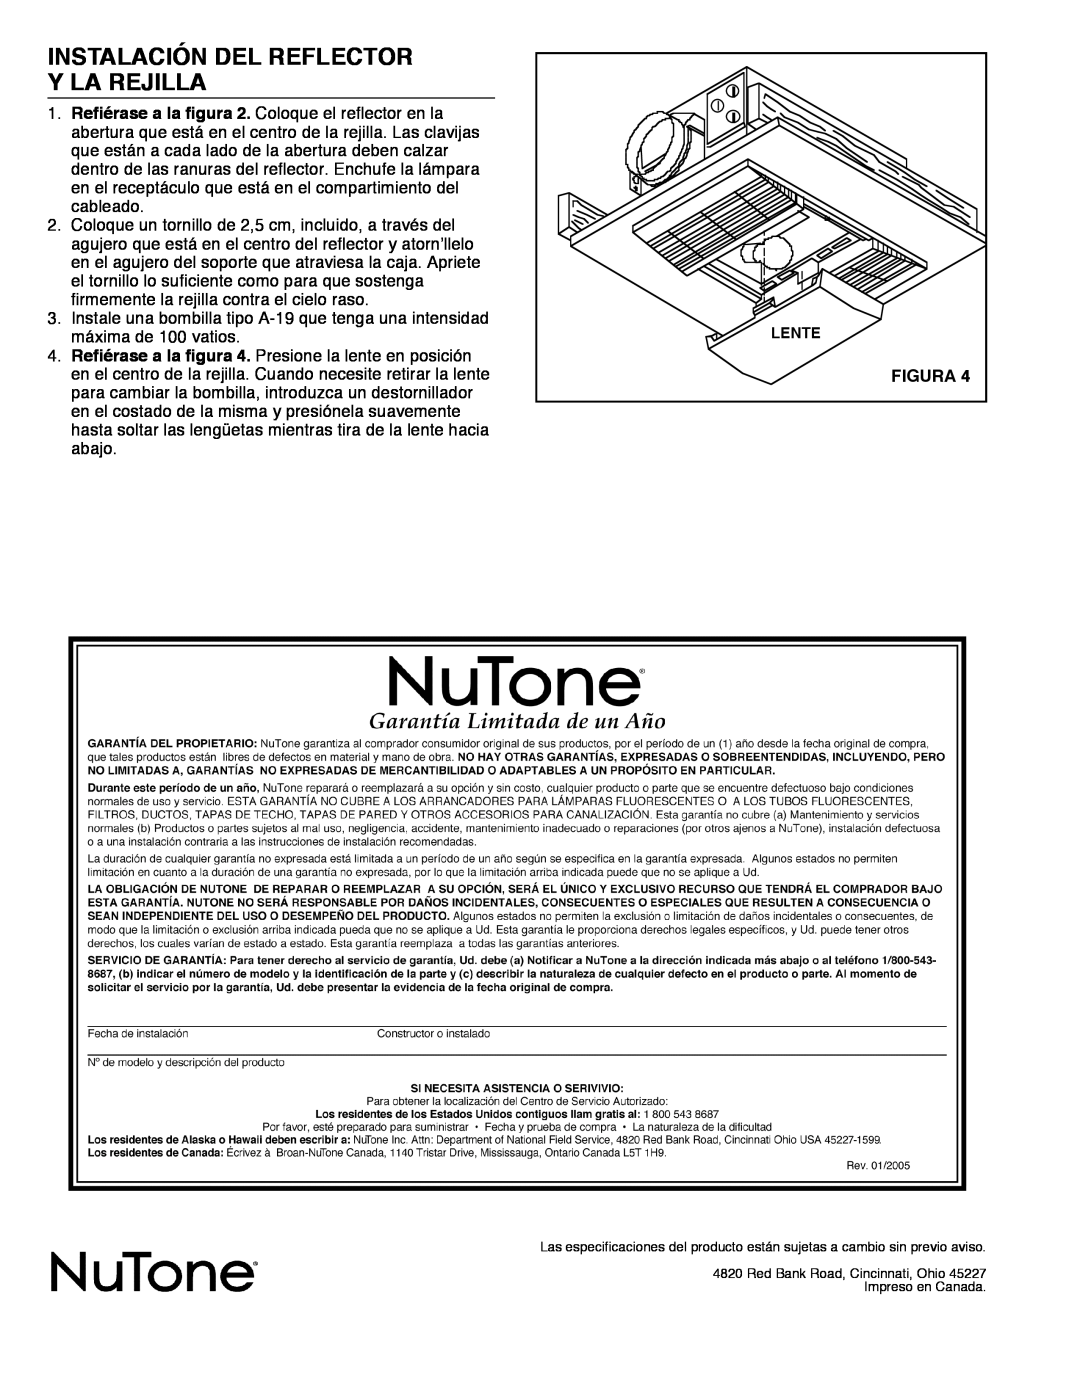 NuTone 668RP installation instructions Instalación Del Reflector, Y La Rejilla, Figura 